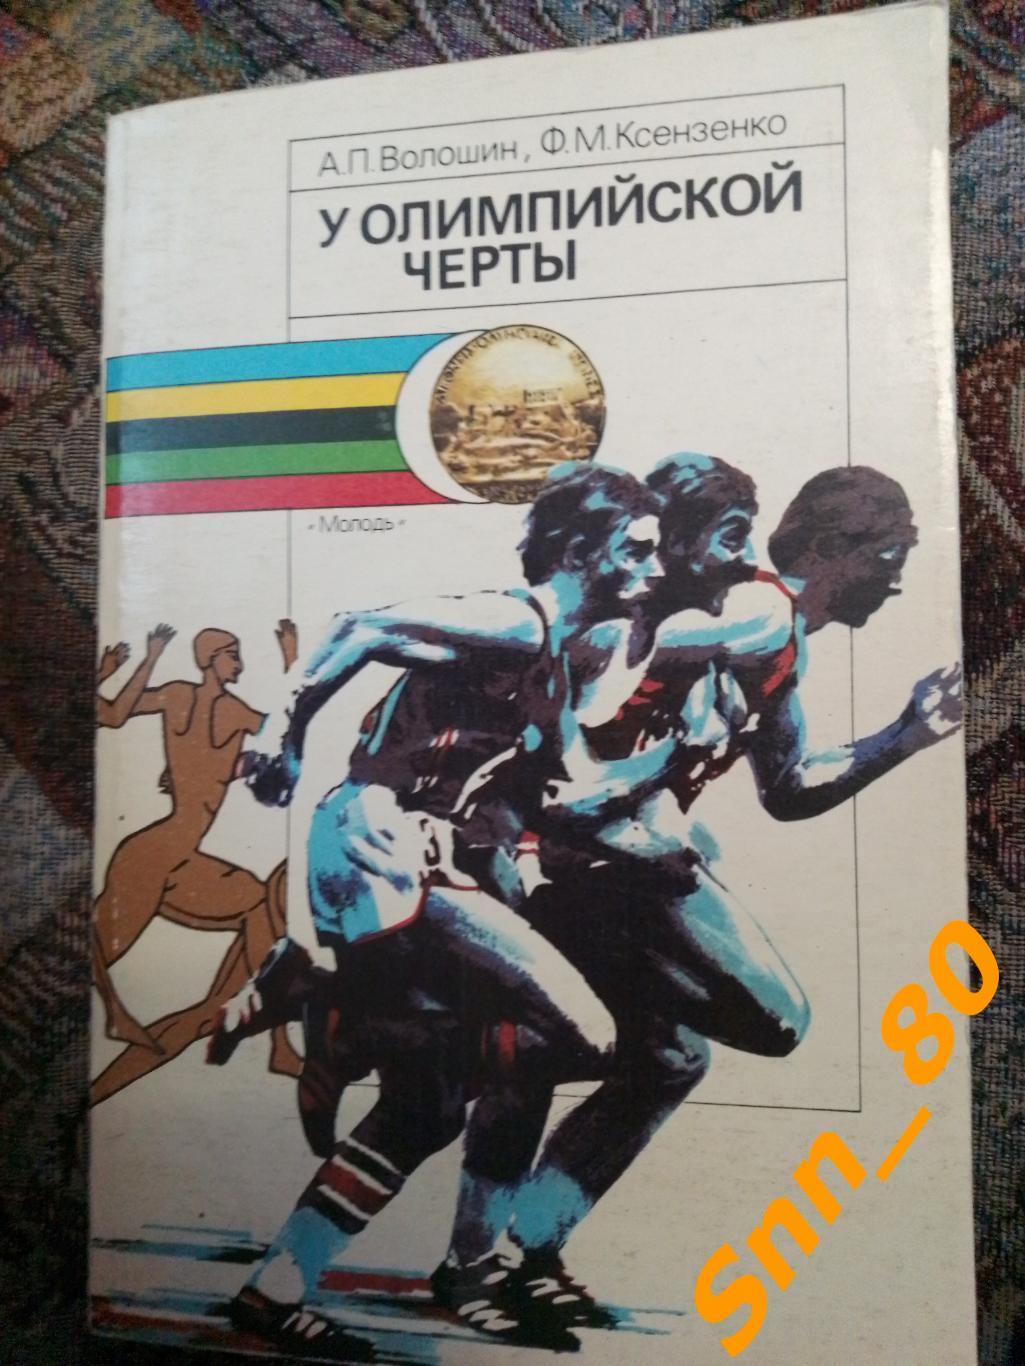 У Олимпийской черты А.П.Волошин Ф.М.Ксензенко 1988 Киев